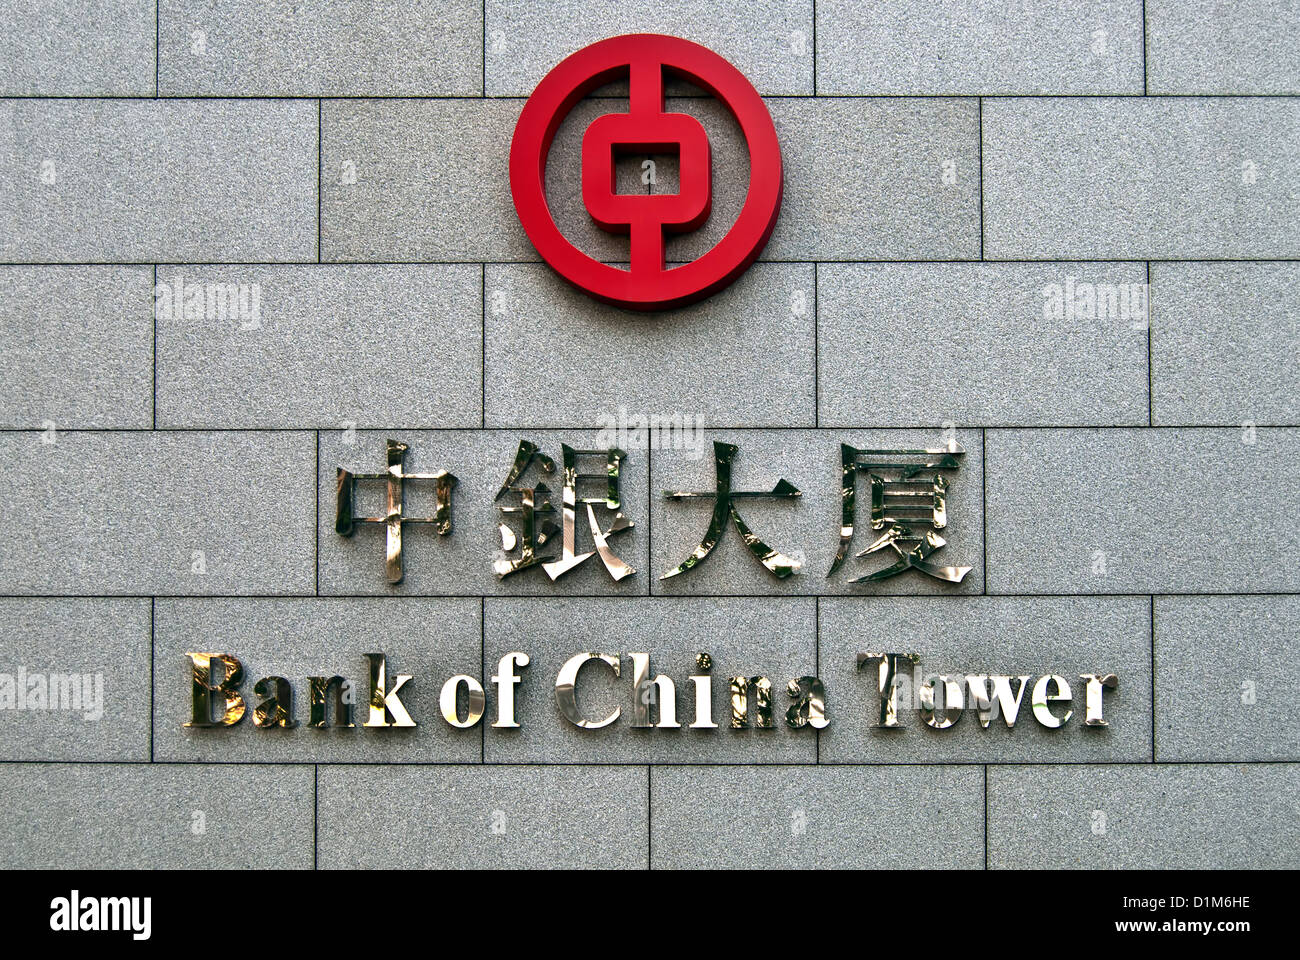 Bank of China Tower with logo, Hong Kong Stock Photo